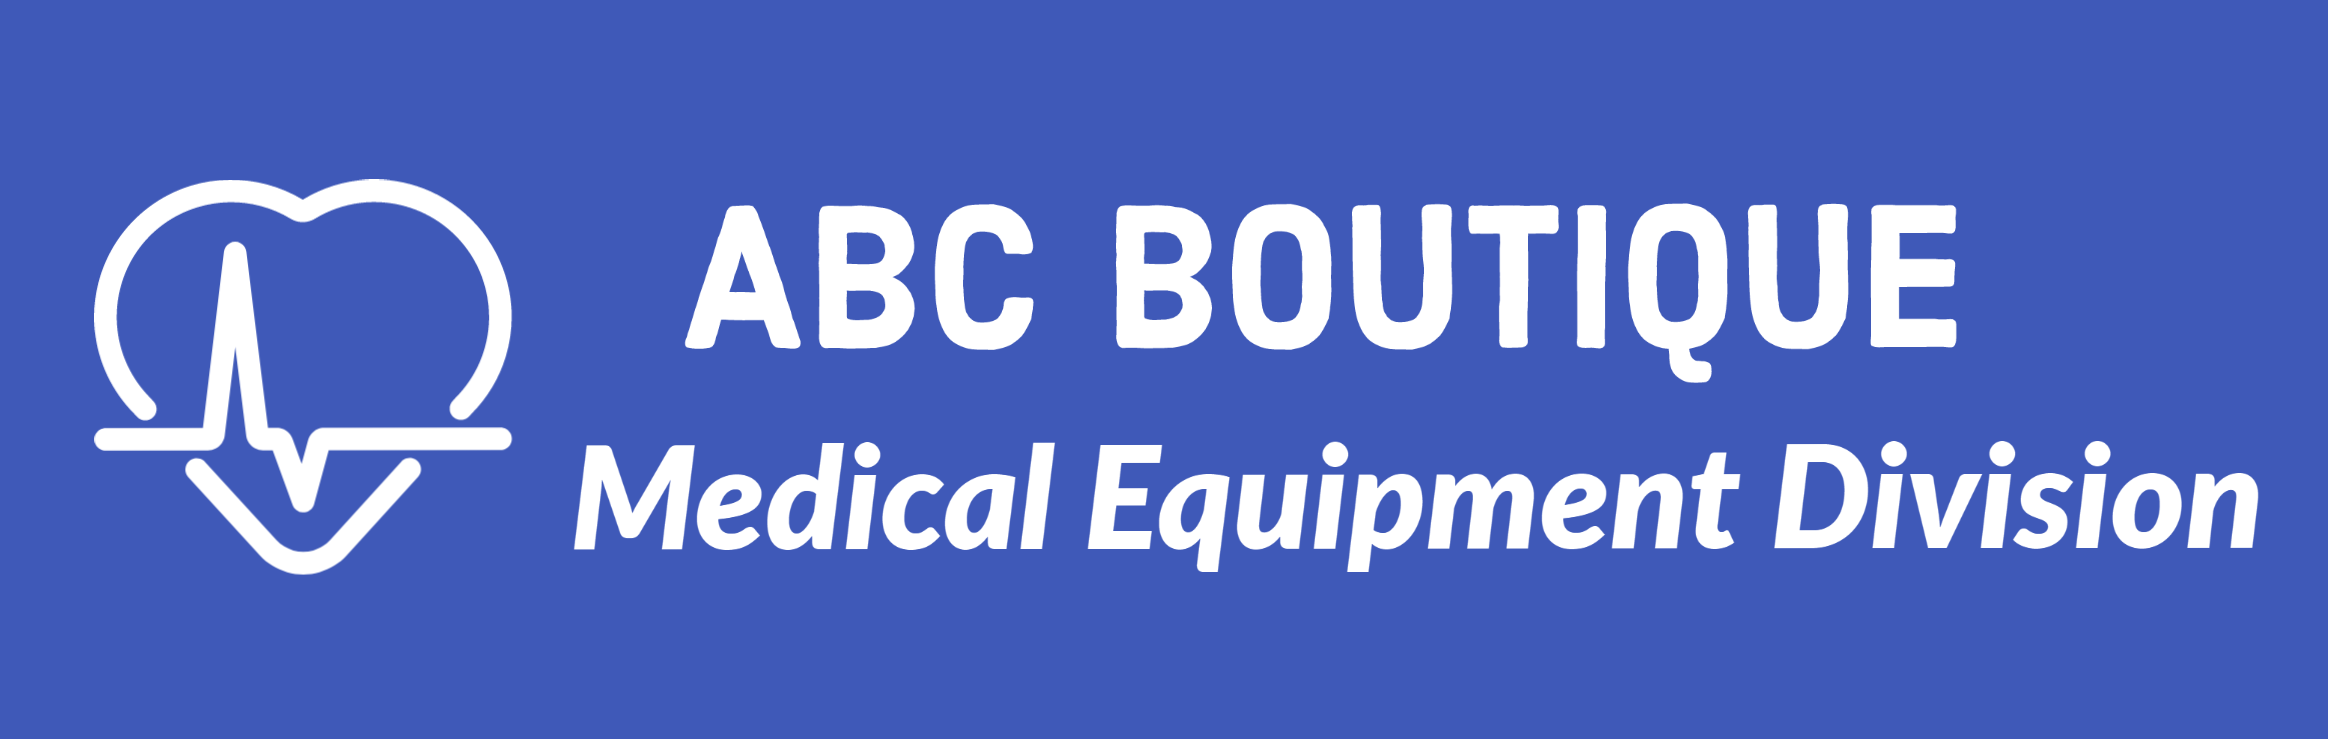 ABC Boutique Medical Equipment